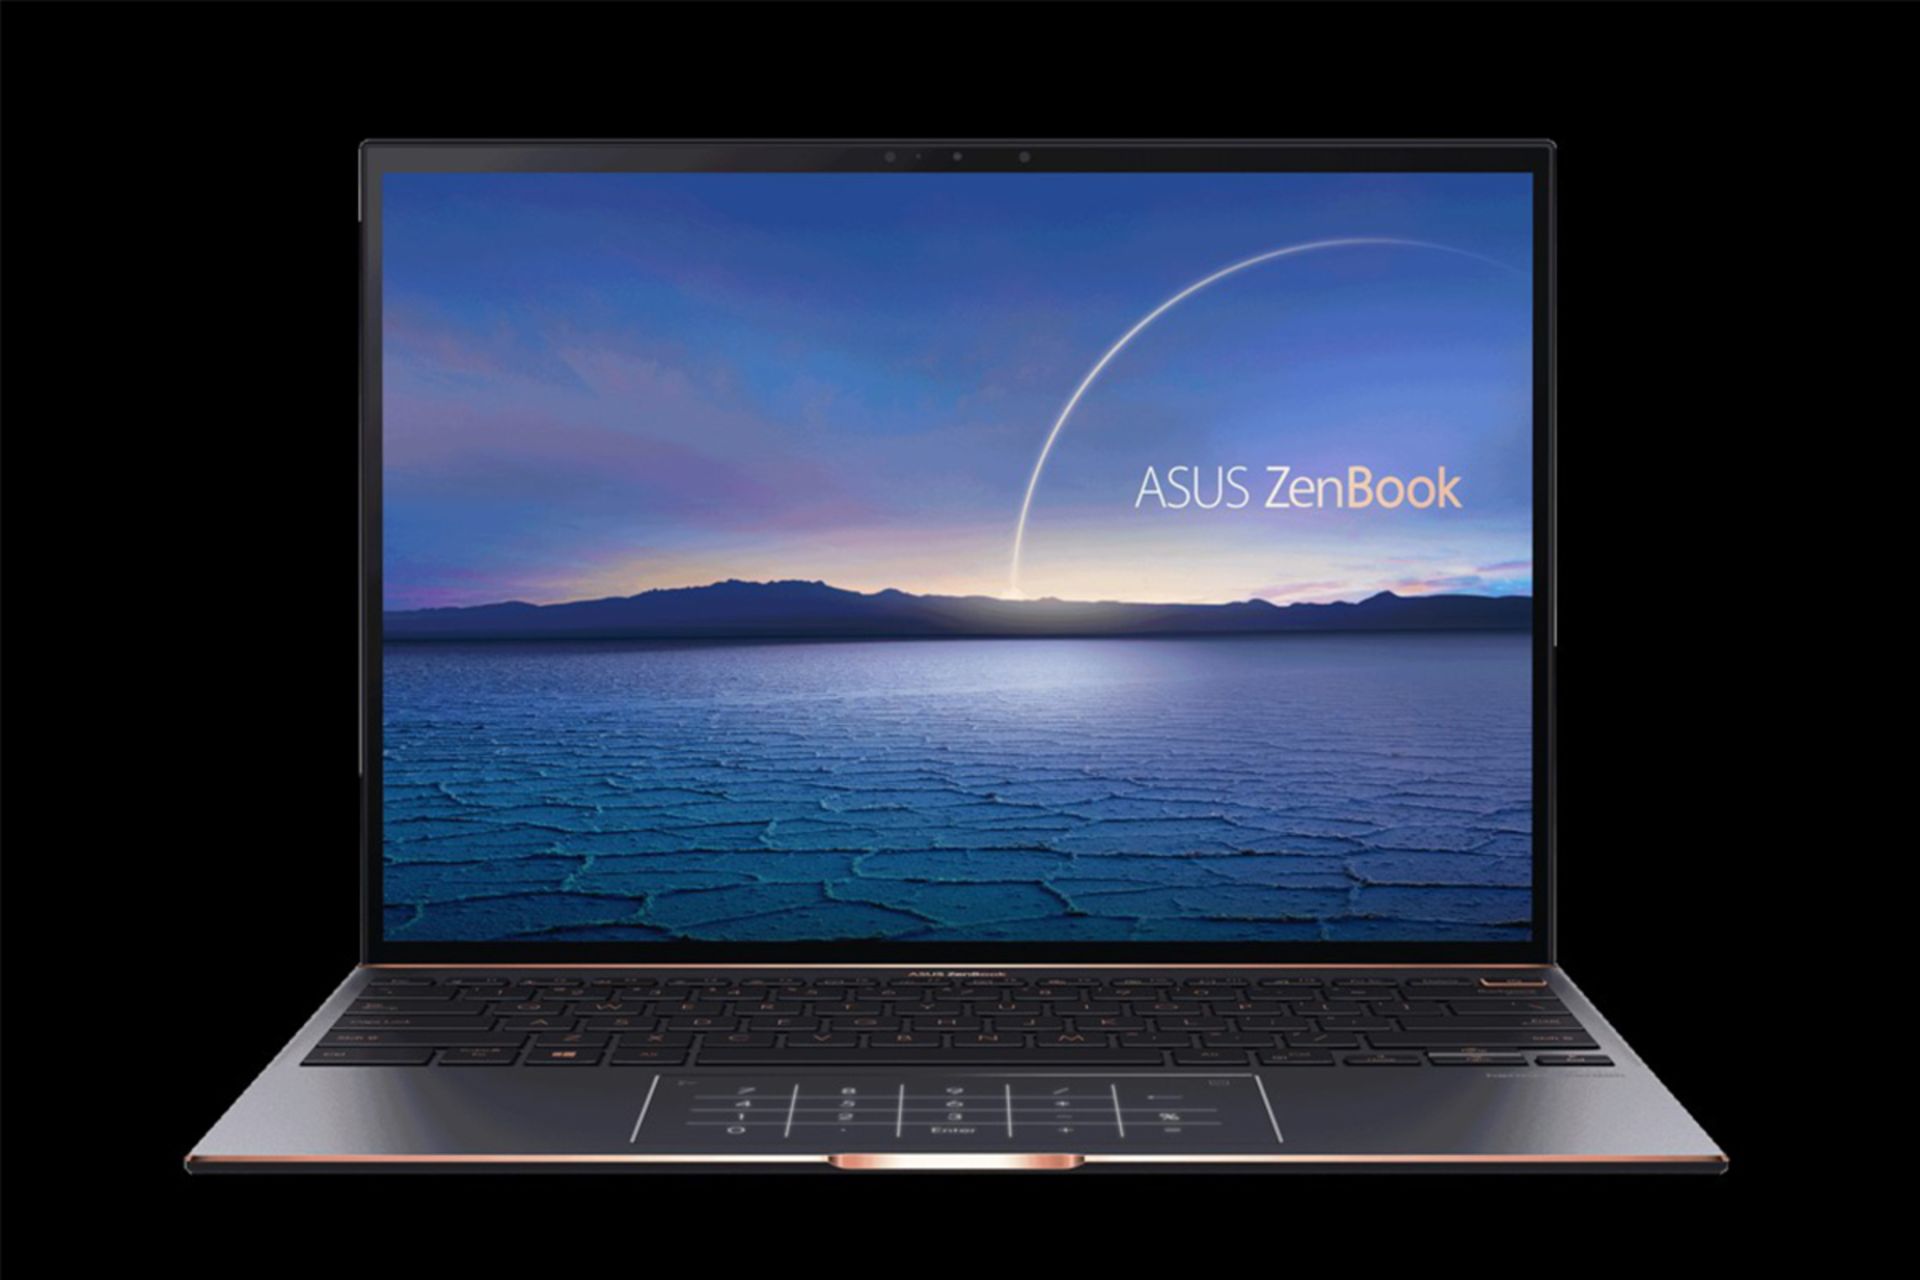 مرجع متخصصين ايران ذن بوك اس ايسوس / Asus ZenBook S از نماي جلو